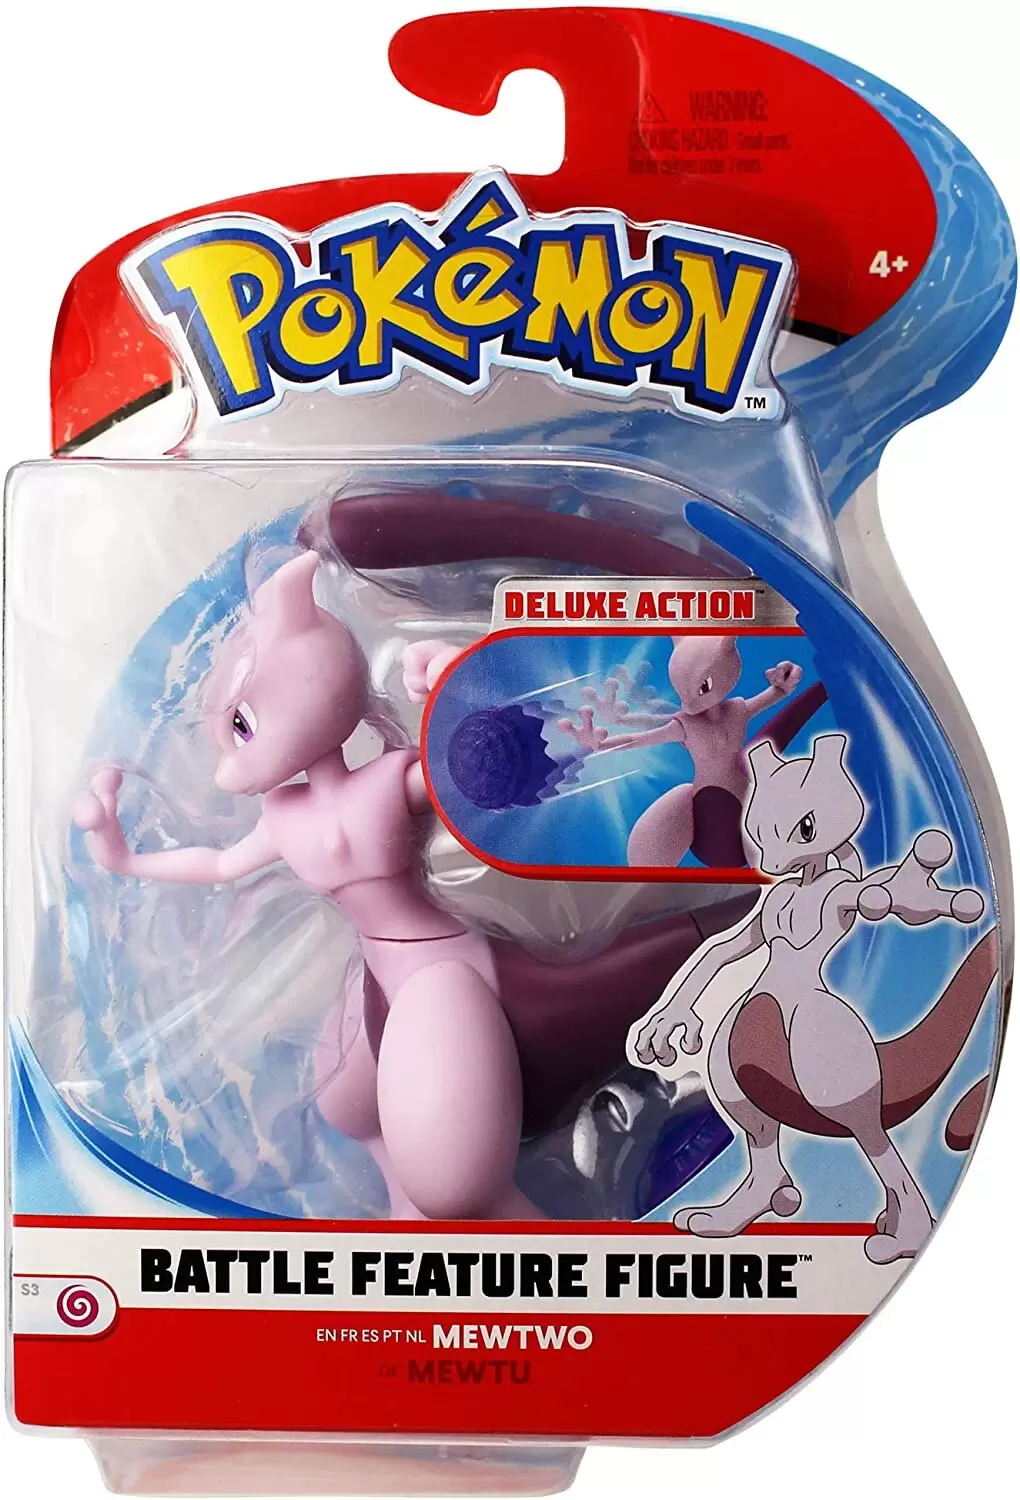 Pokémon Action Figures - Battle Feature Figure - Mewtwo